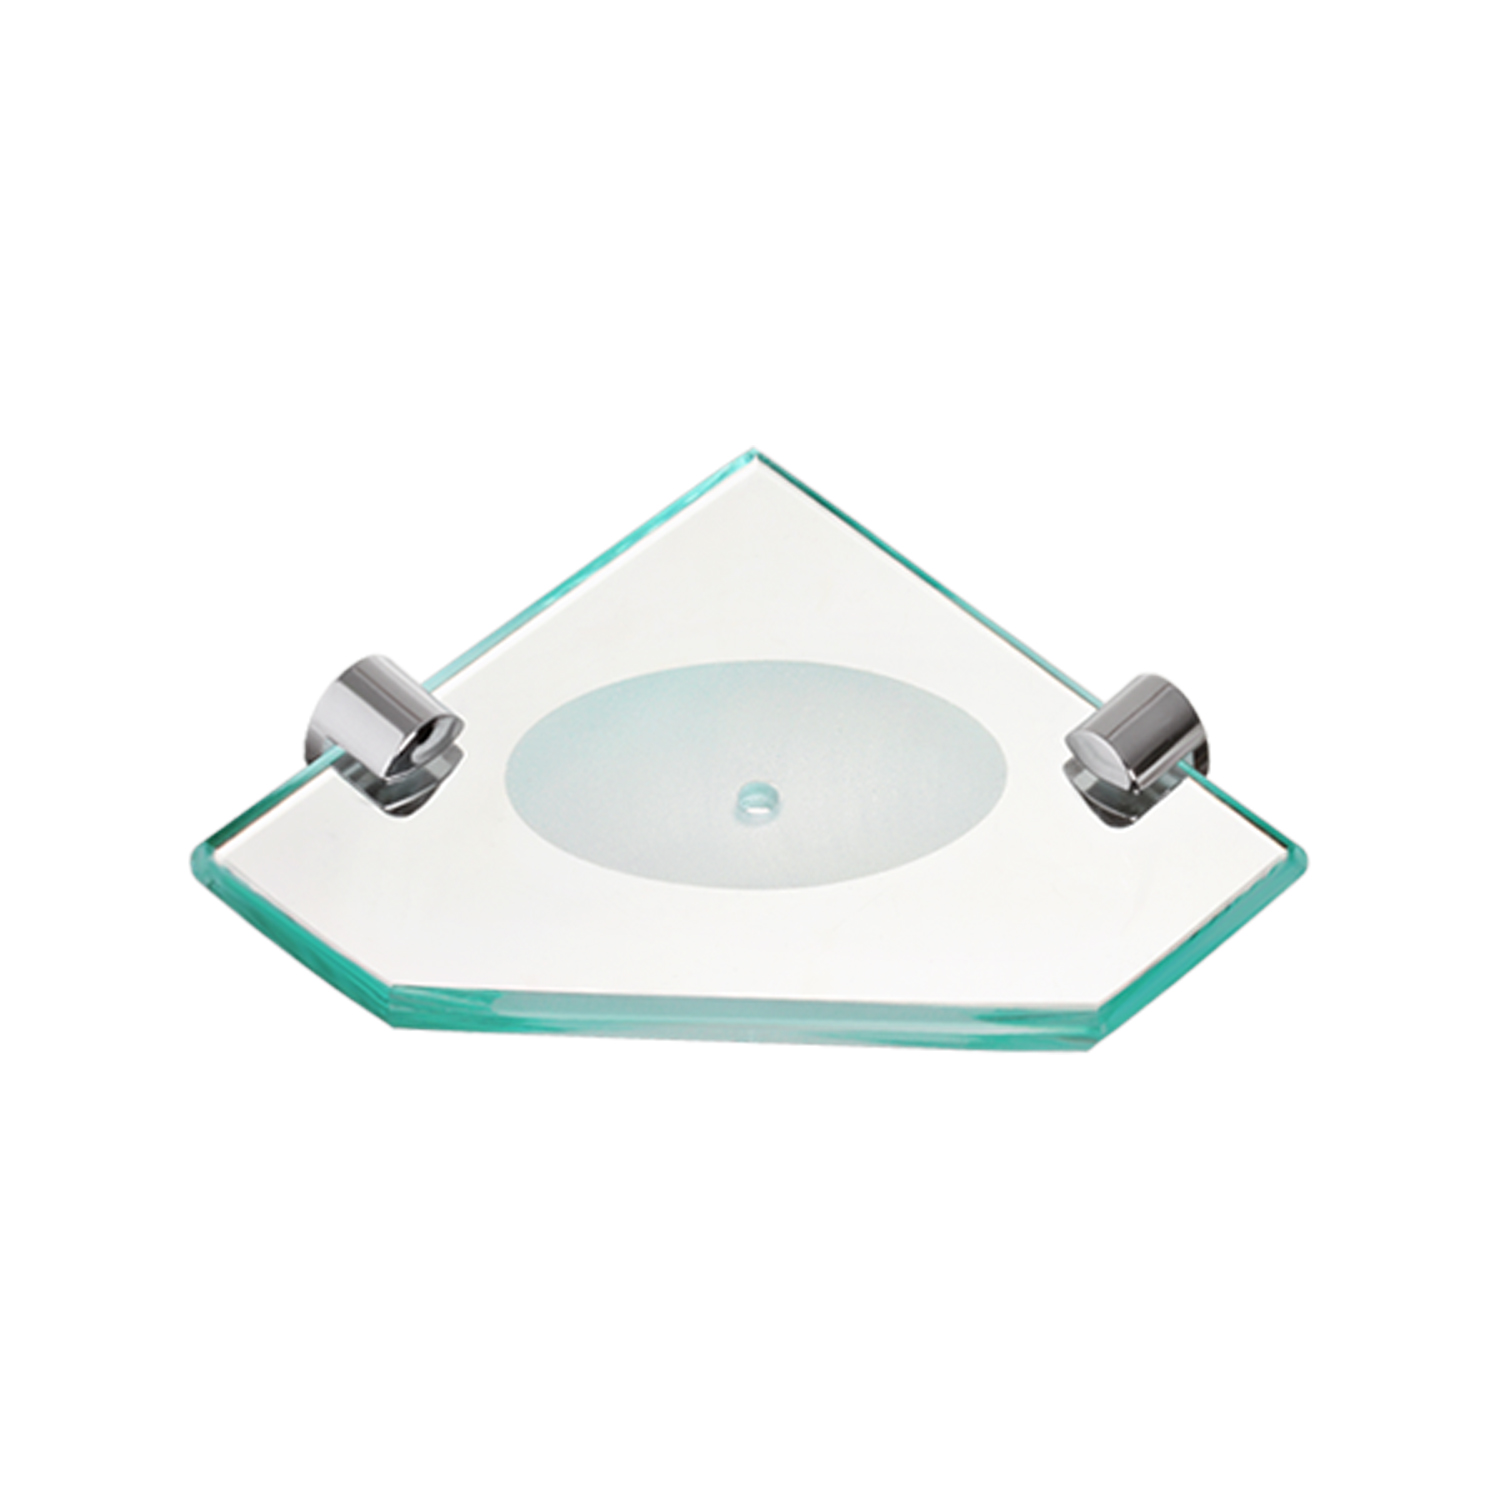 Kit Acessórios Banheiro De Vidro Luxo Incolor 5 Peças Balibox